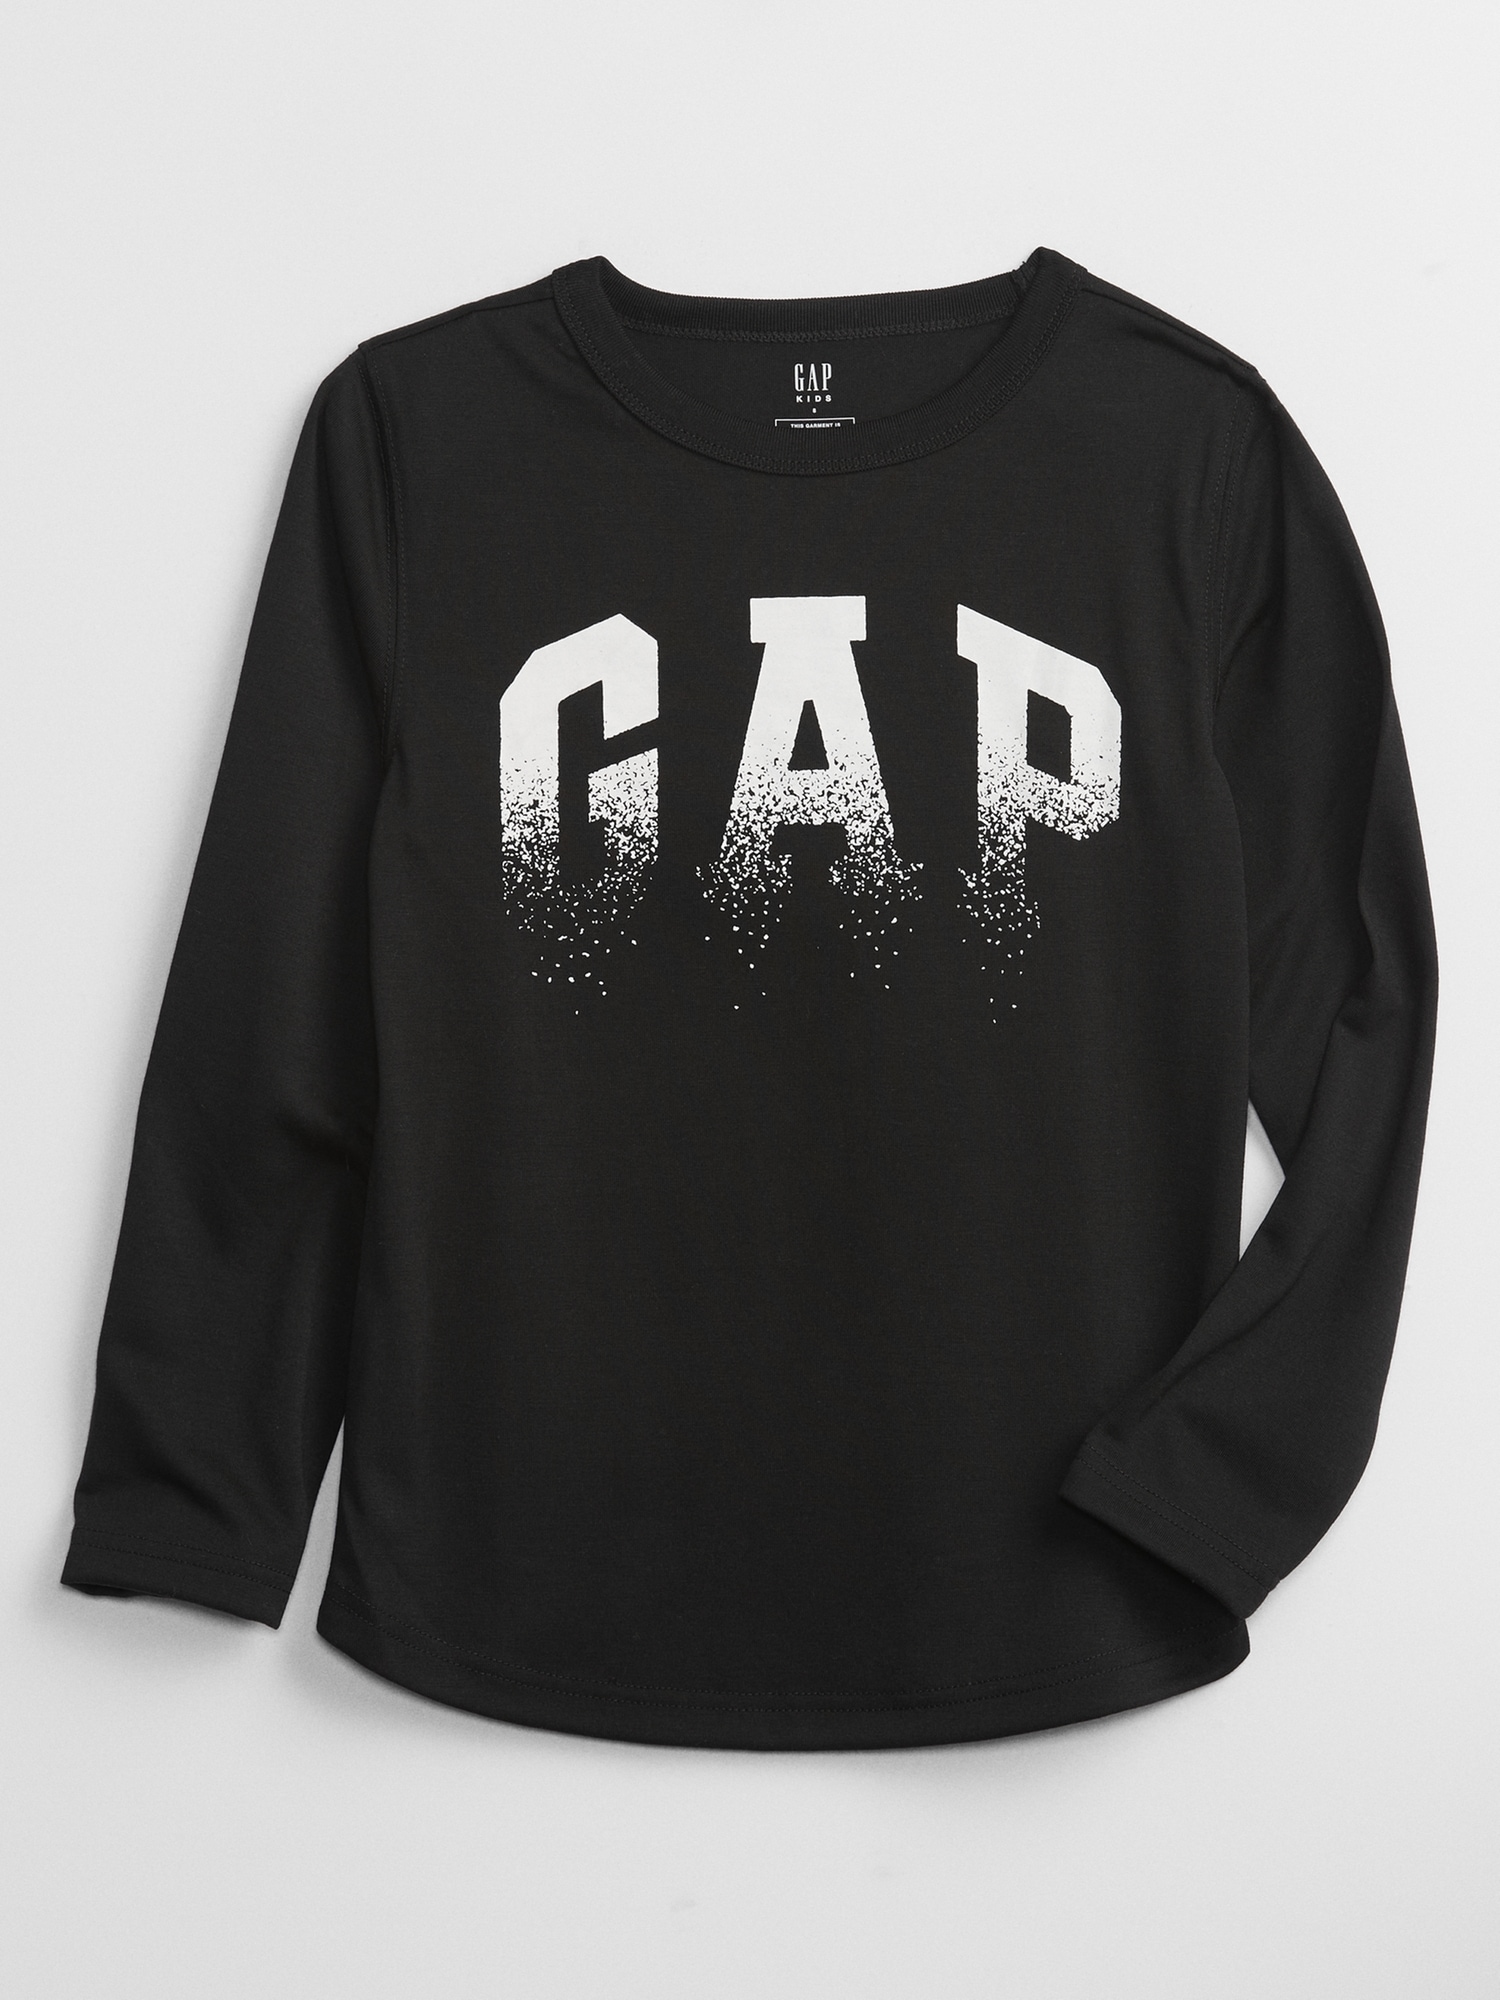 Kids 100% Recycled Polyester Gap Logo PJ Shirt | Gap Factory